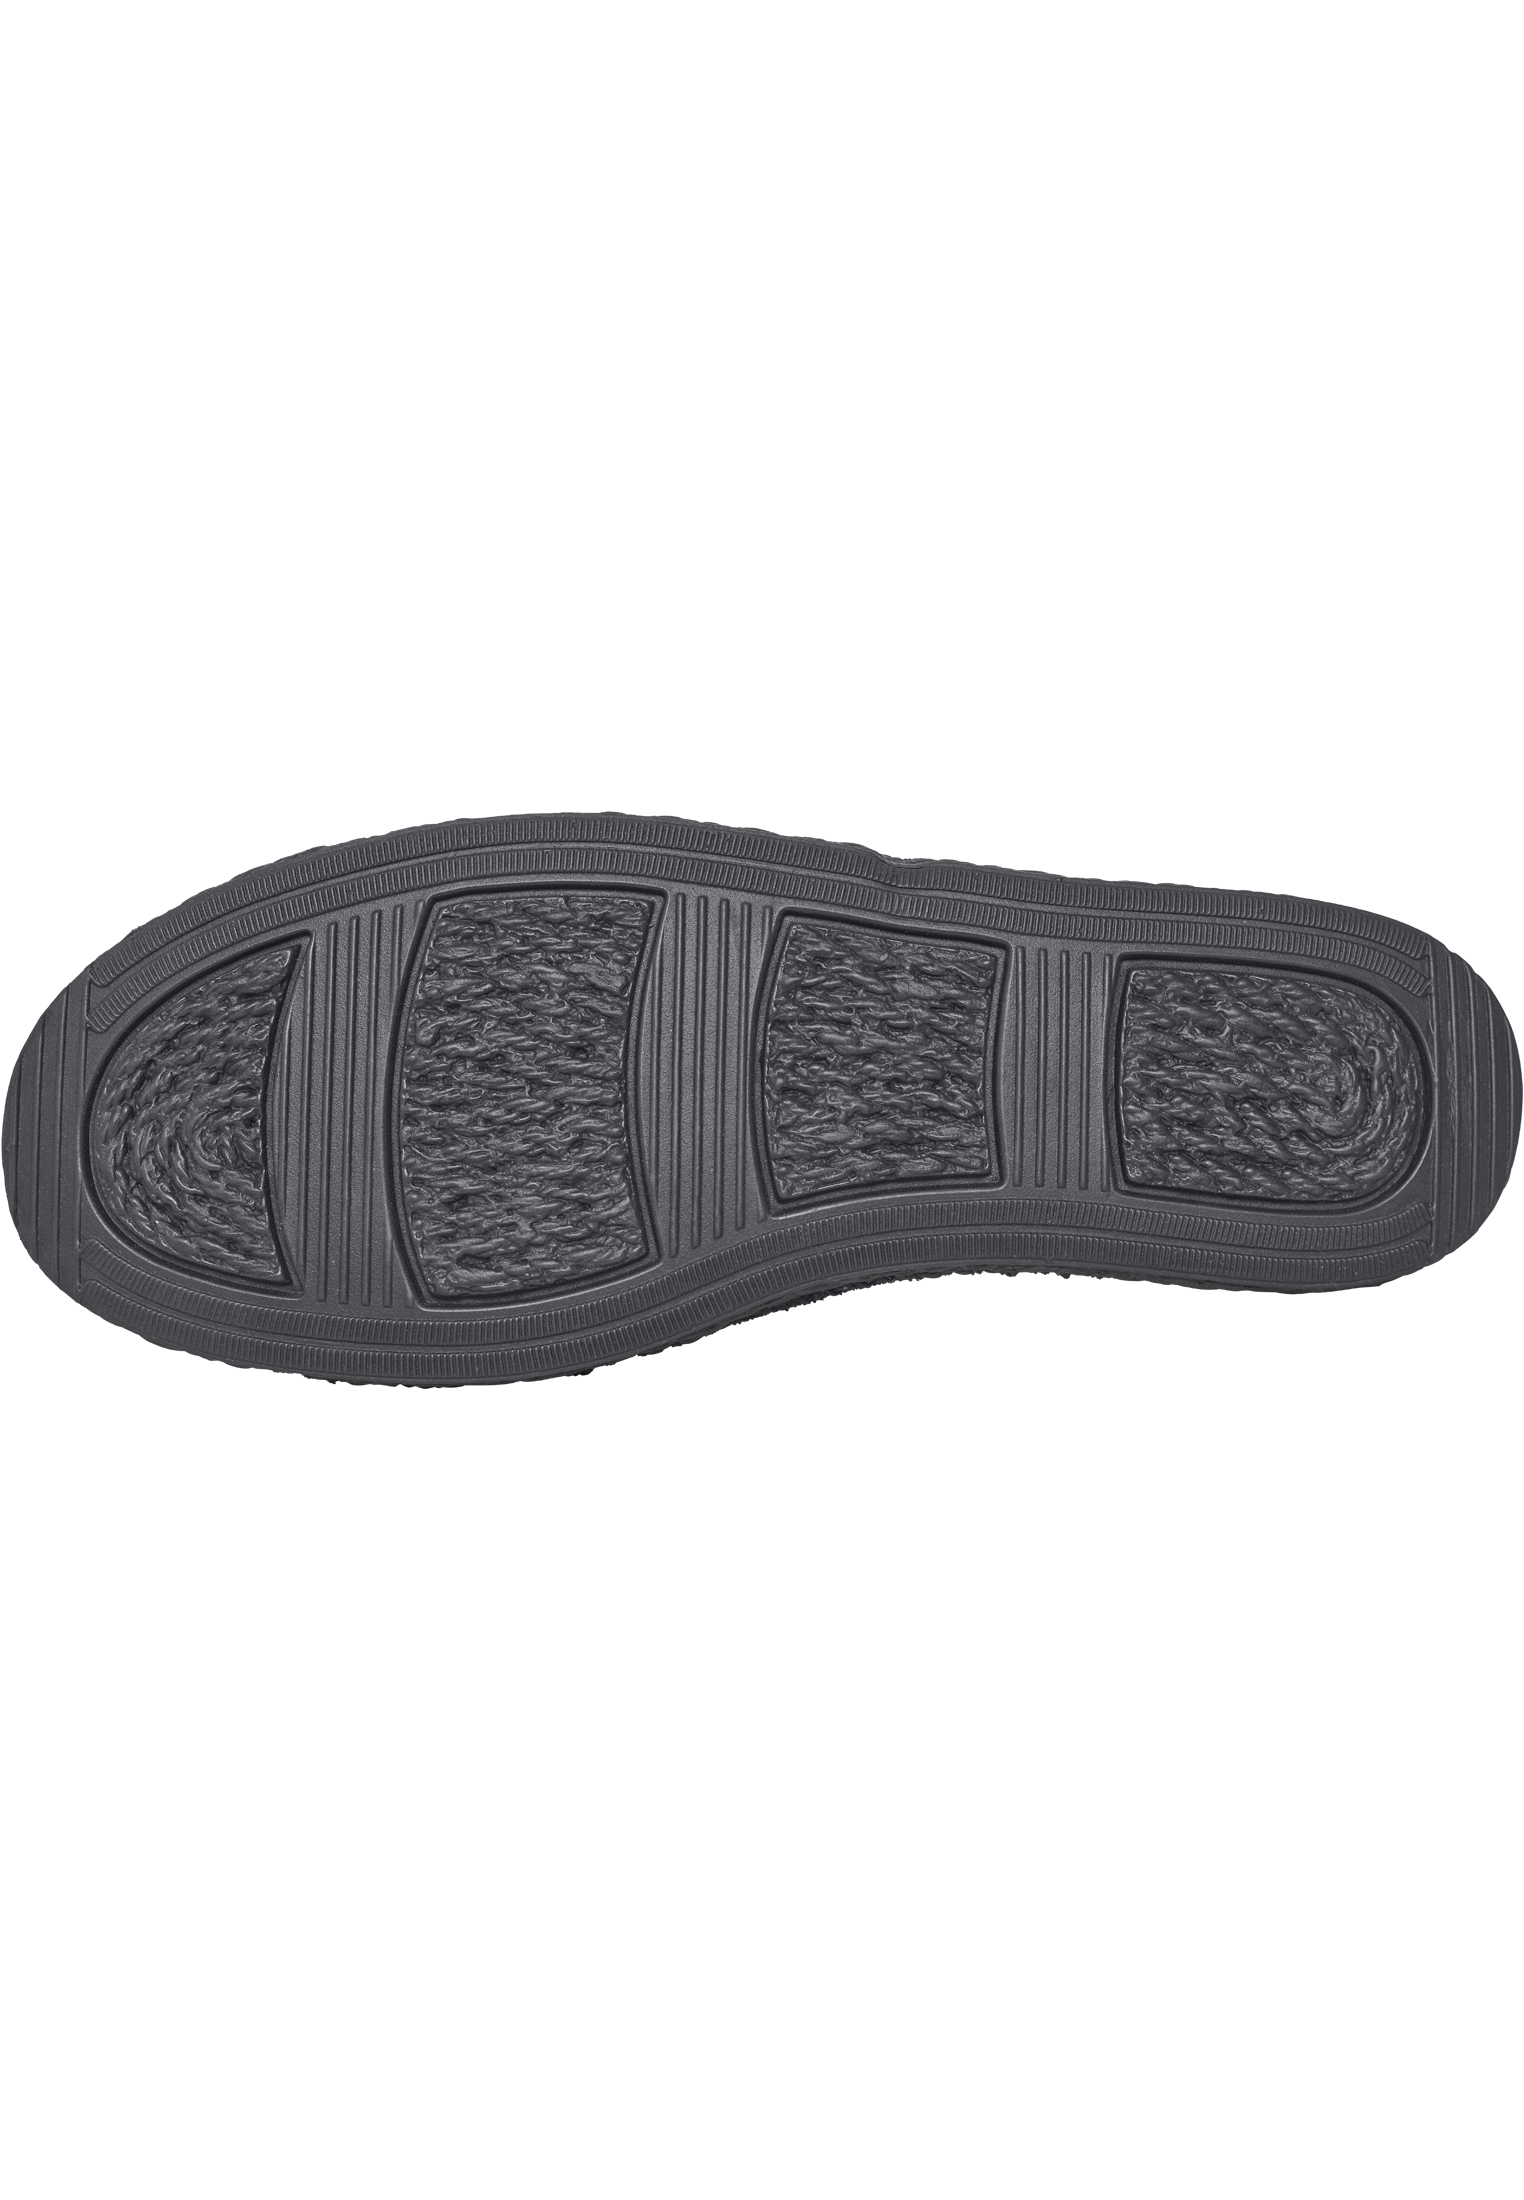 Schuhe Canvas Mules in Farbe black